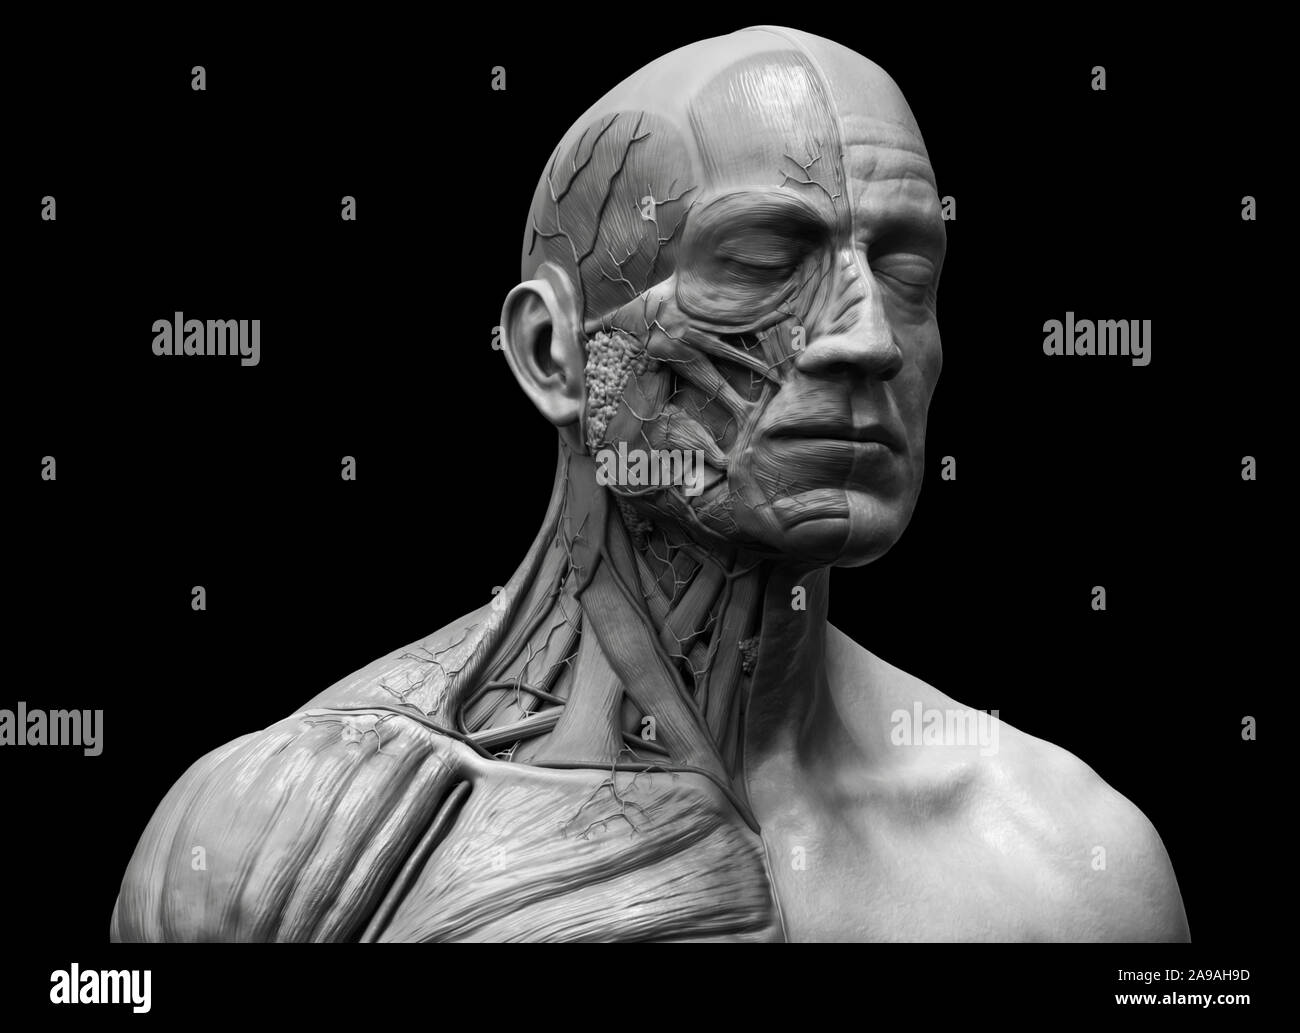 L'anatomie du corps humain - anatomie musculaire du visage du cou et de la poitrine , medical image référence de l'anatomie humaine en contexte de rendu réaliste 3D Banque D'Images